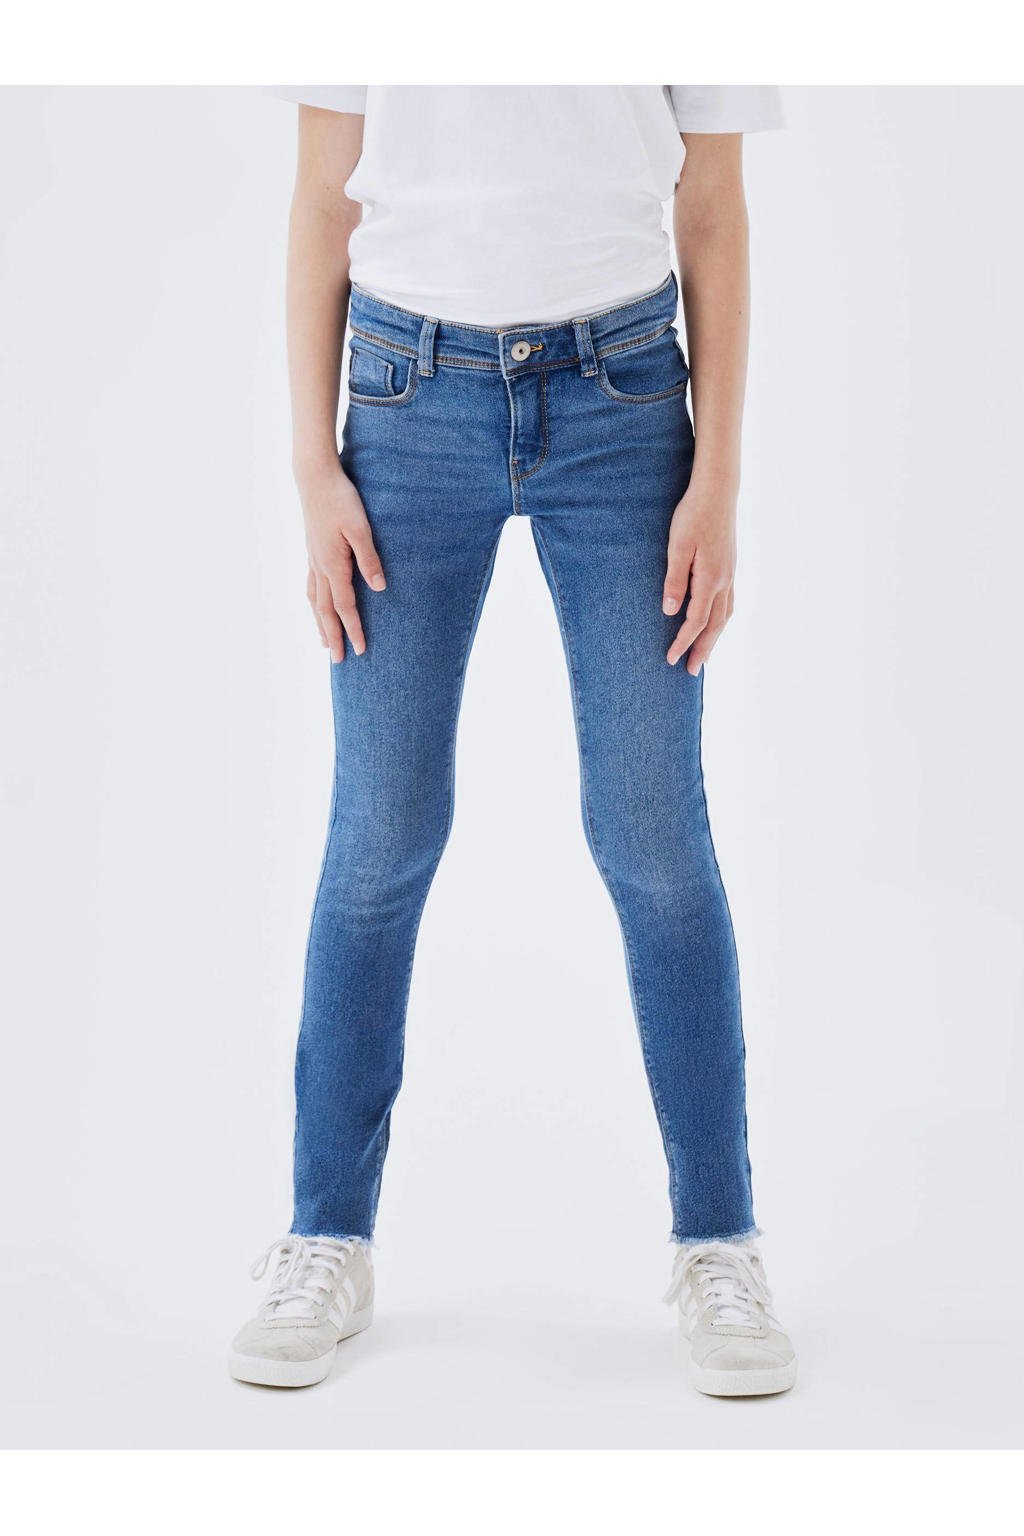 Medium blue denim meisjes NAME IT KIDS skinny jeans van stretchdenim met regular waist en rits- en knoopsluiting